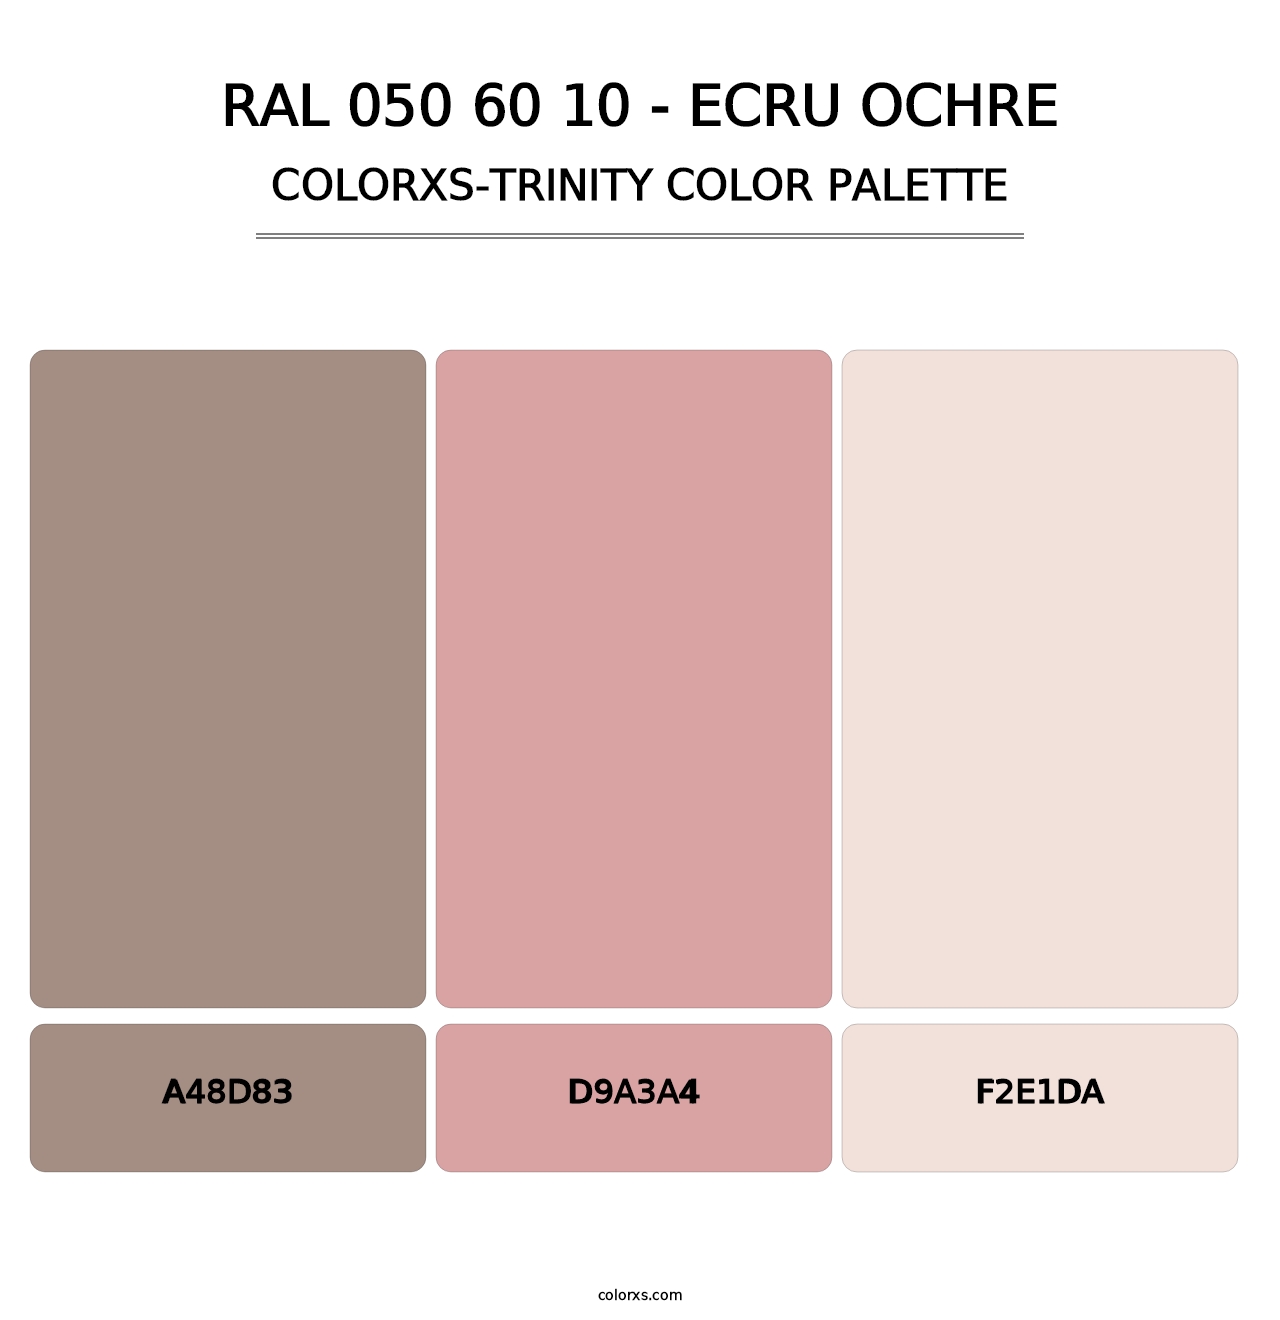 RAL 050 60 10 - Ecru Ochre - Colorxs Trinity Palette